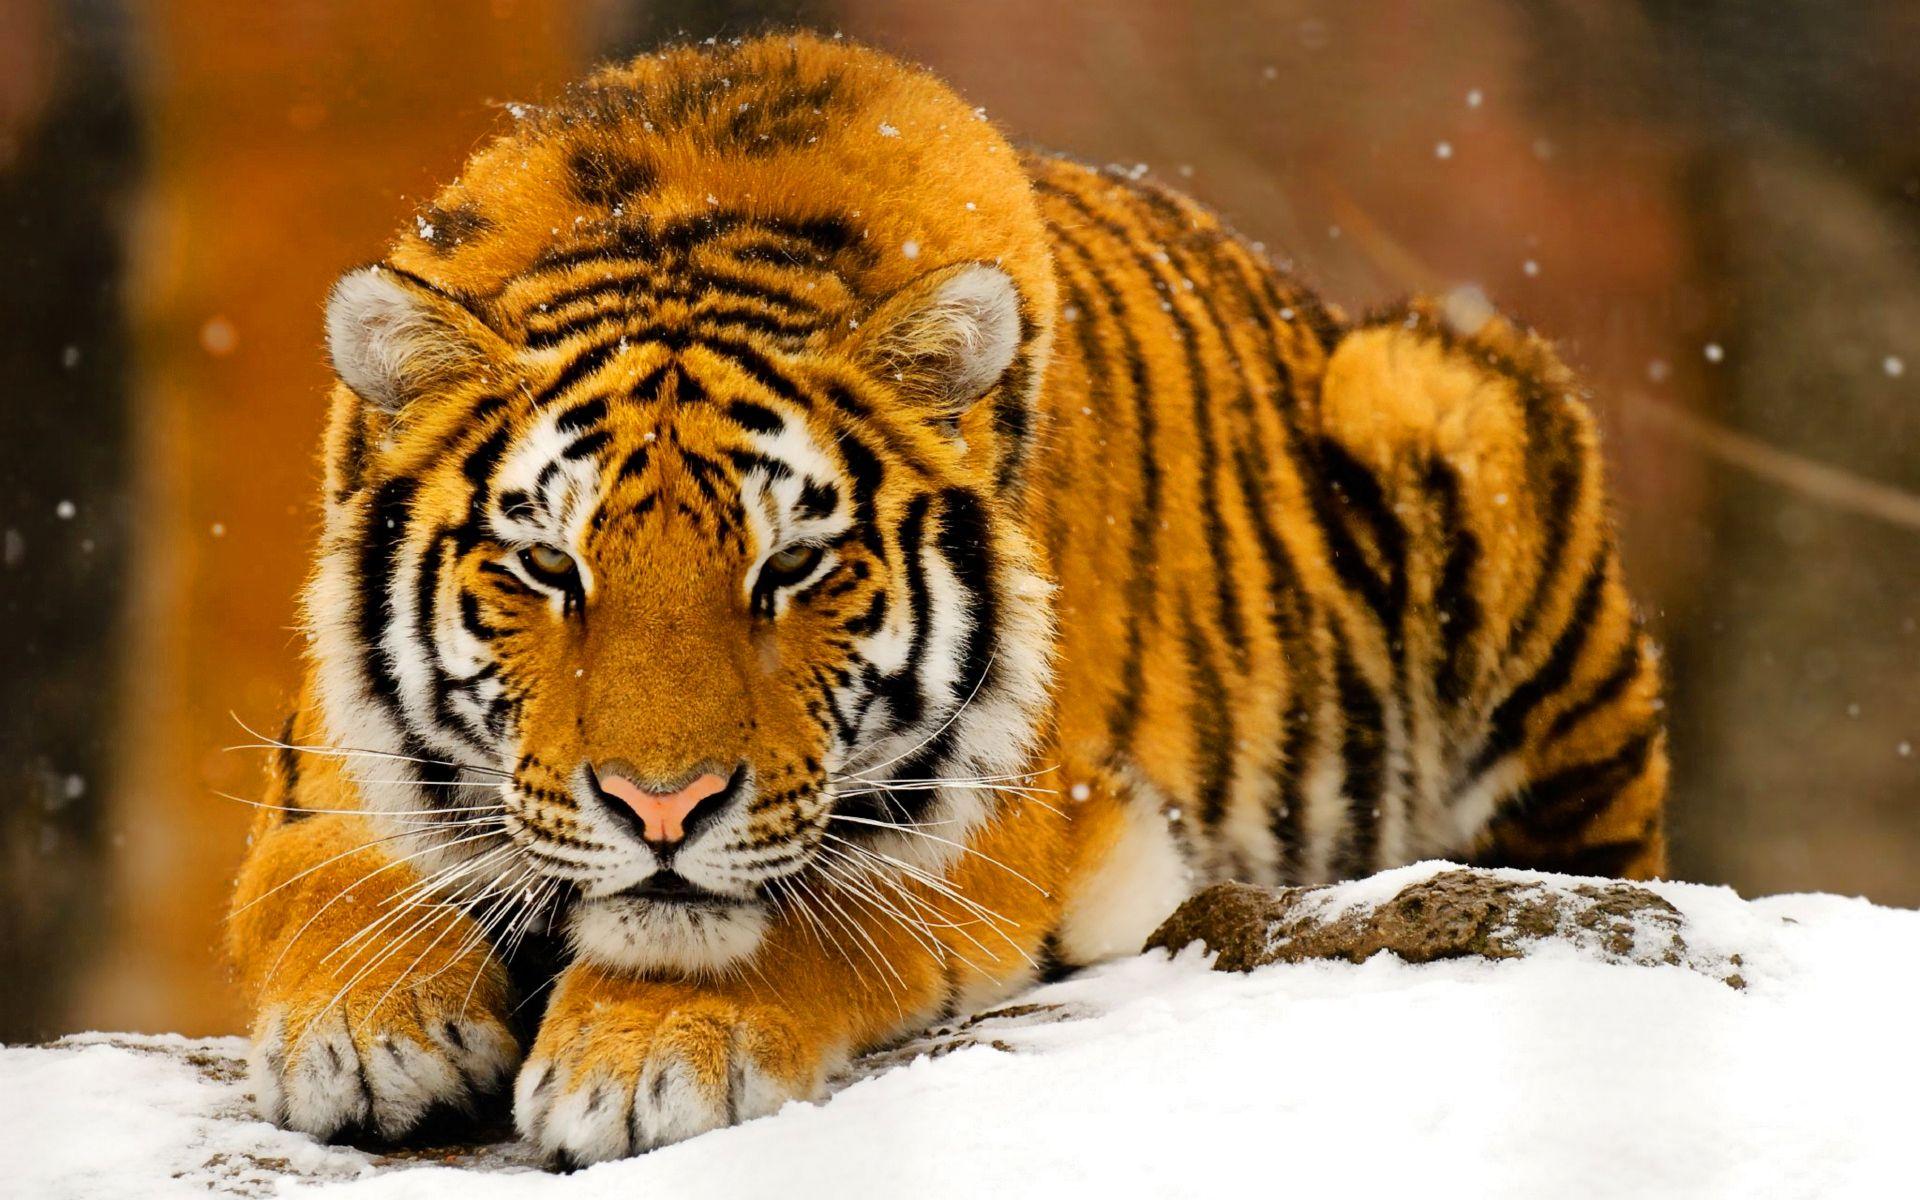 Free HD Tiger Animal Wallpaper Download